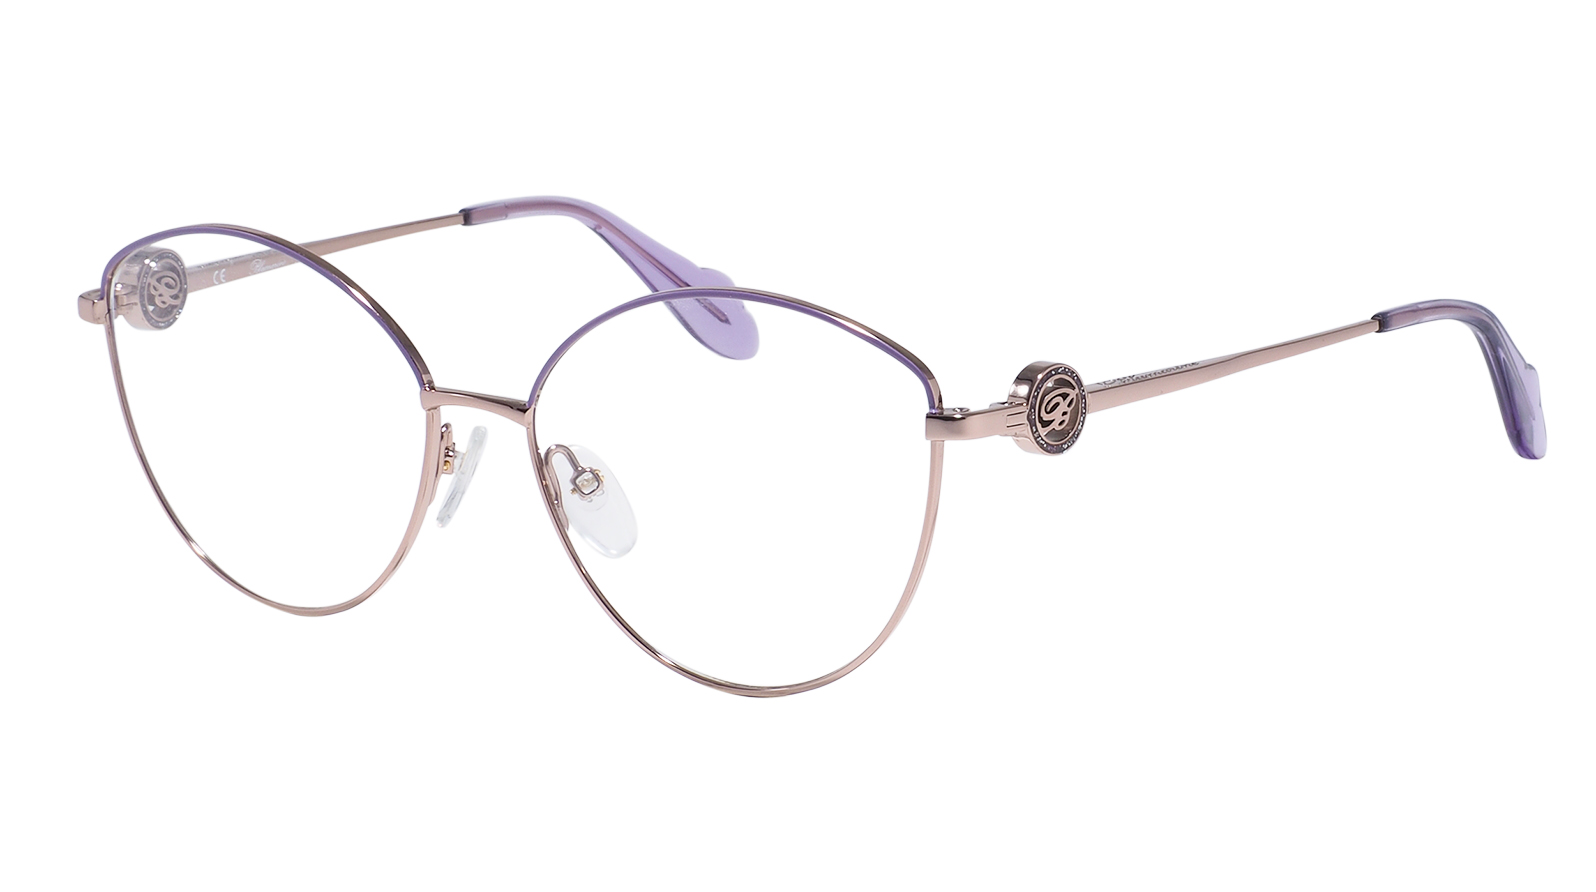 Blumarine 167 E59 готовые очки moct для зрения с диоптриями 2 5 женские корригирующие для чтения